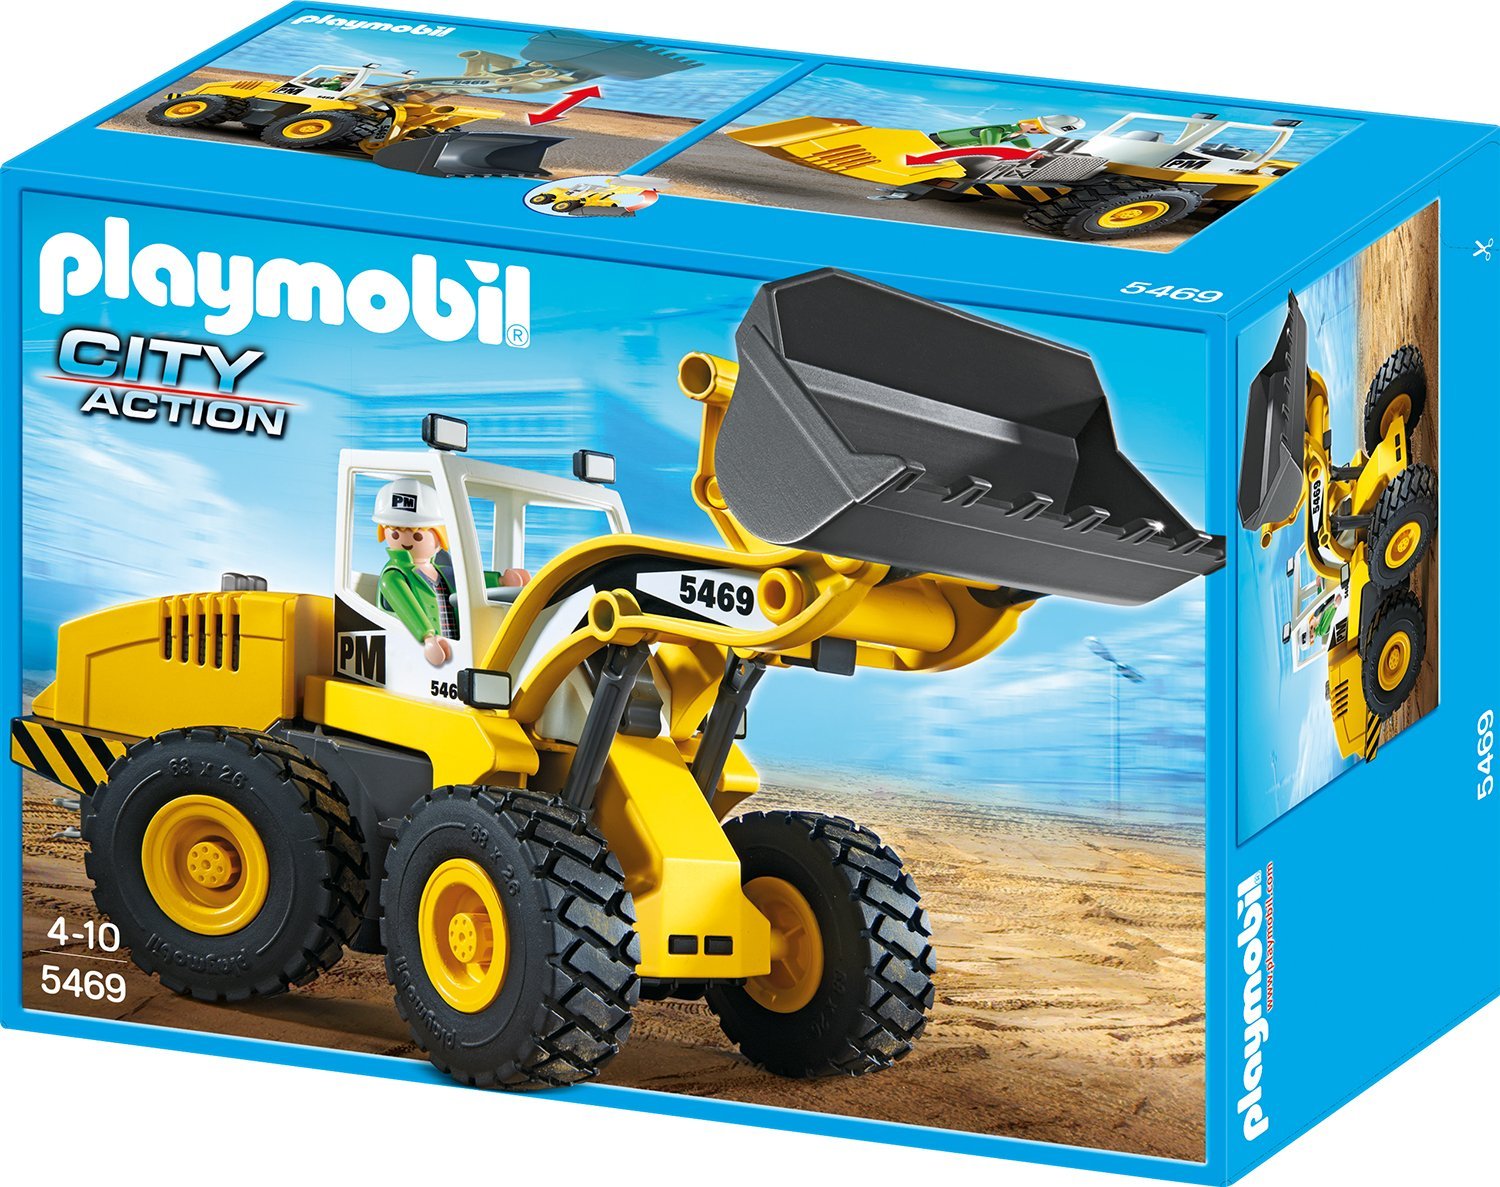 Spielzeug > Playmobil > Citylife > Bau